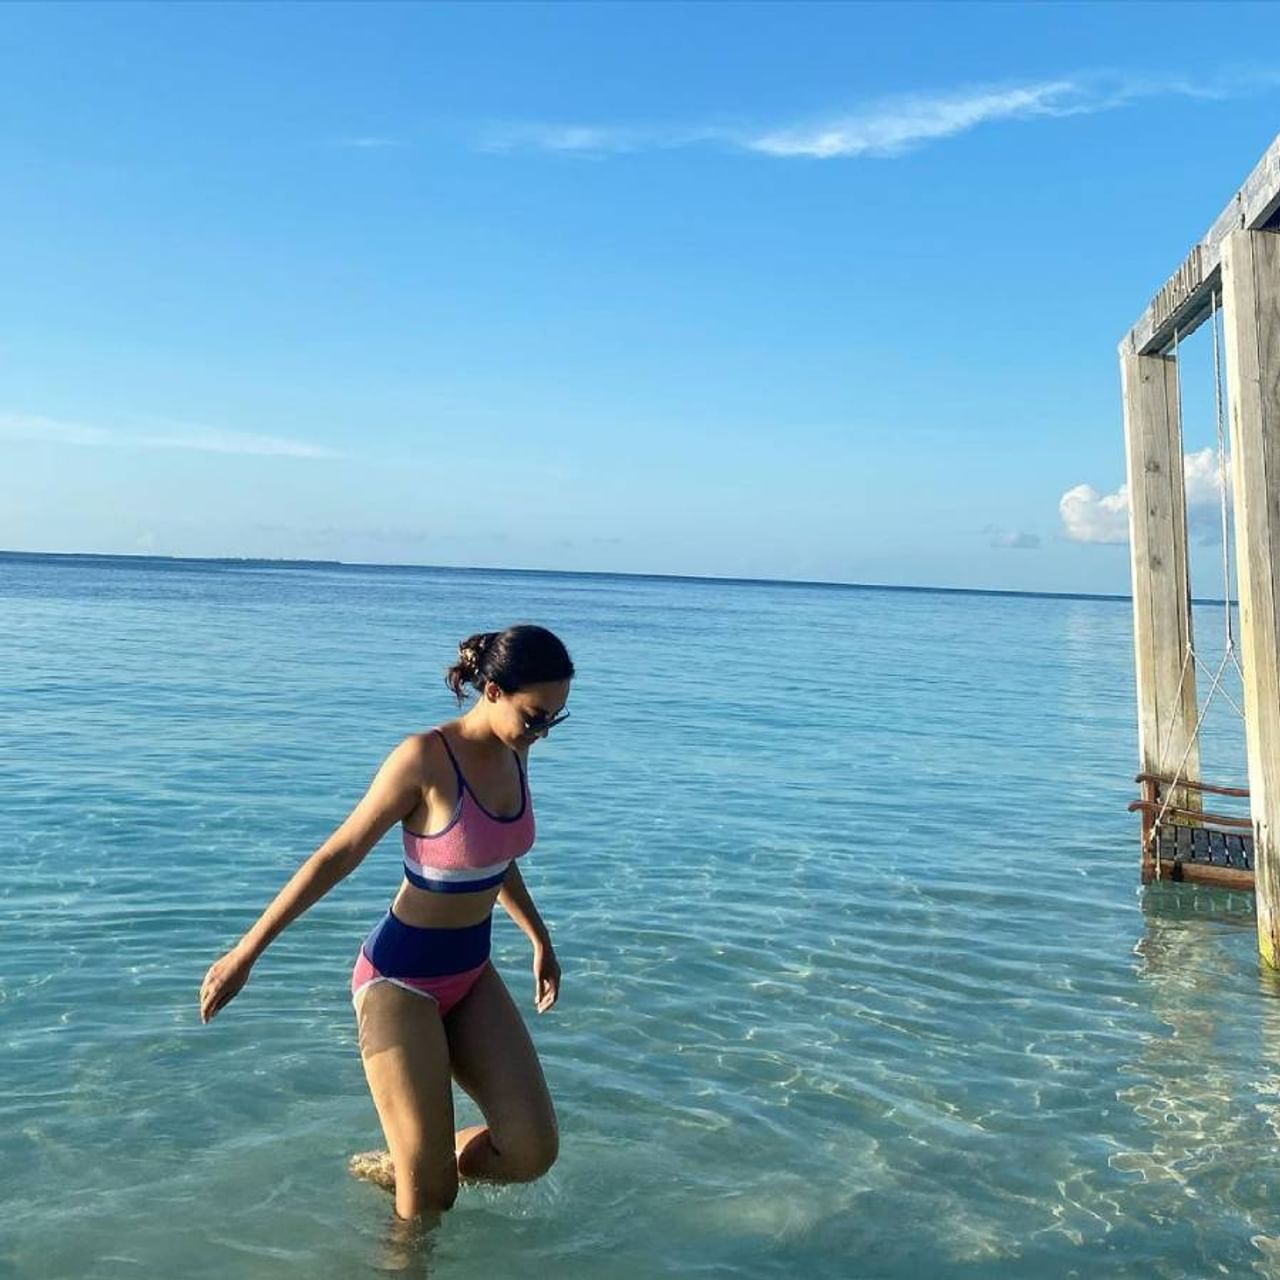 नागिन फेम टीव्ही अभिनेत्री सुरभी ज्योती मालदीवमध्ये 'क्वालिटी टाइम' घालवत आहे. होय,परदेशात सुट्टी घालवणाऱ्या या सुंदर अभिनेत्रीने तिचे बिकिनी फोटो पोस्ट करून इंटरनेट विश्वात खळबळ उडवून दिली आहे.